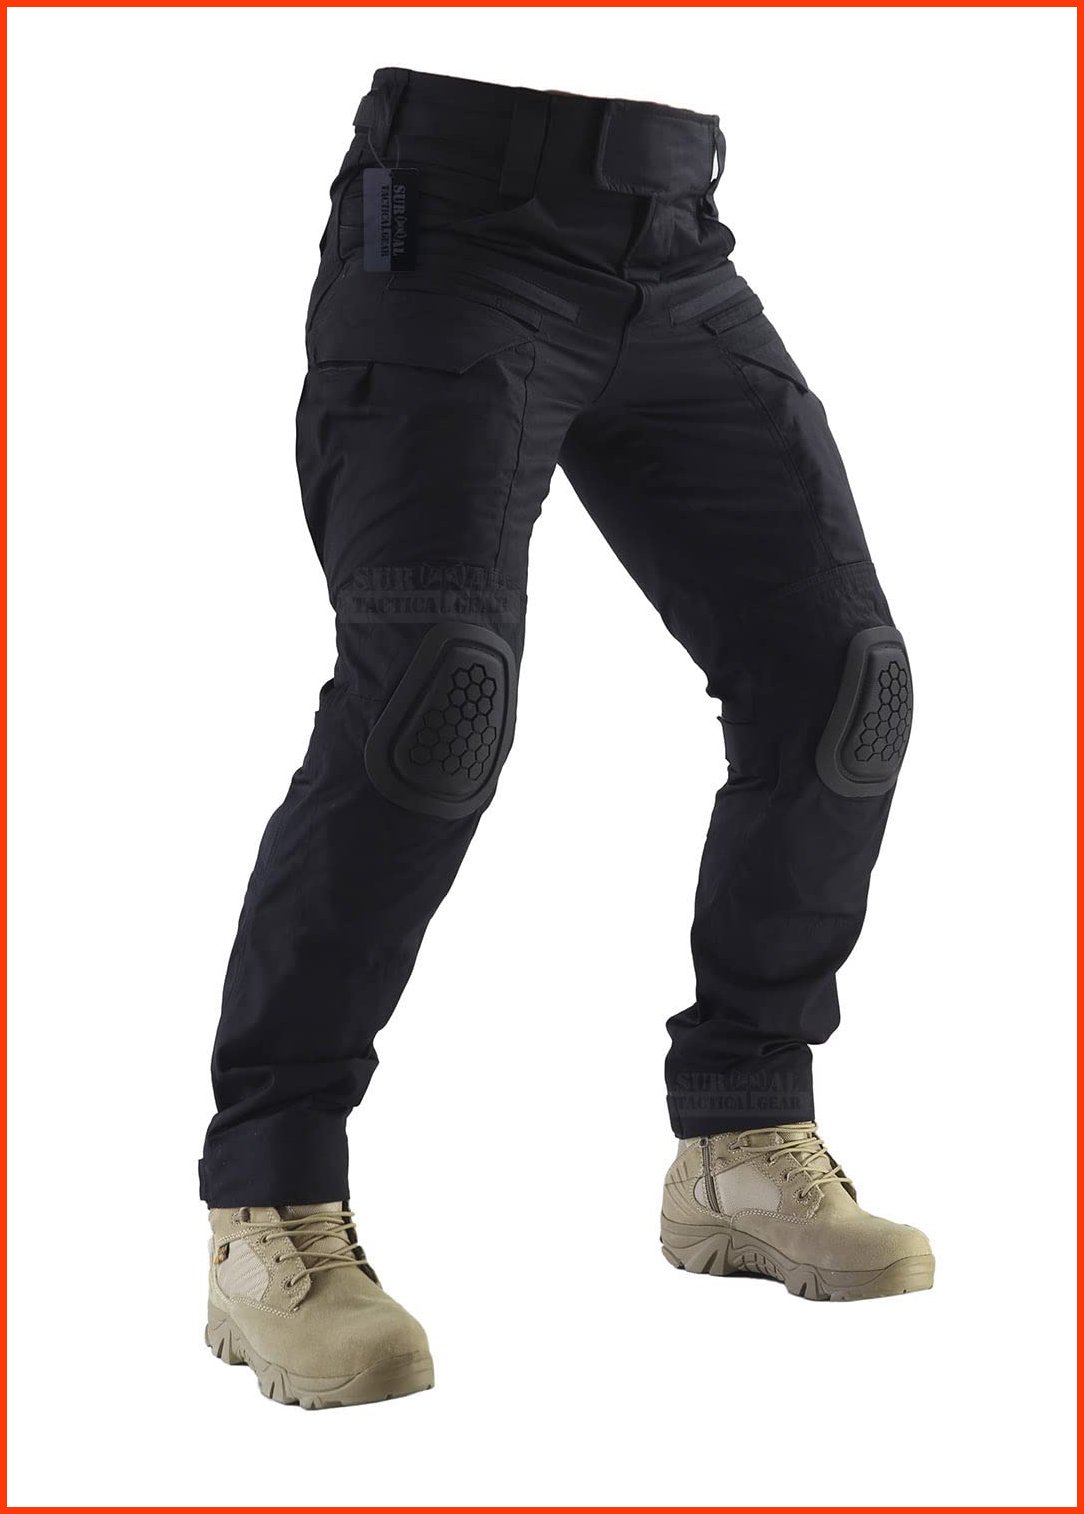 並行輸入品ZAPT Combat Pants Mens Airsoft Paintball Tactical Pants with Knee Pads Hunting Camouflage Military Trousers